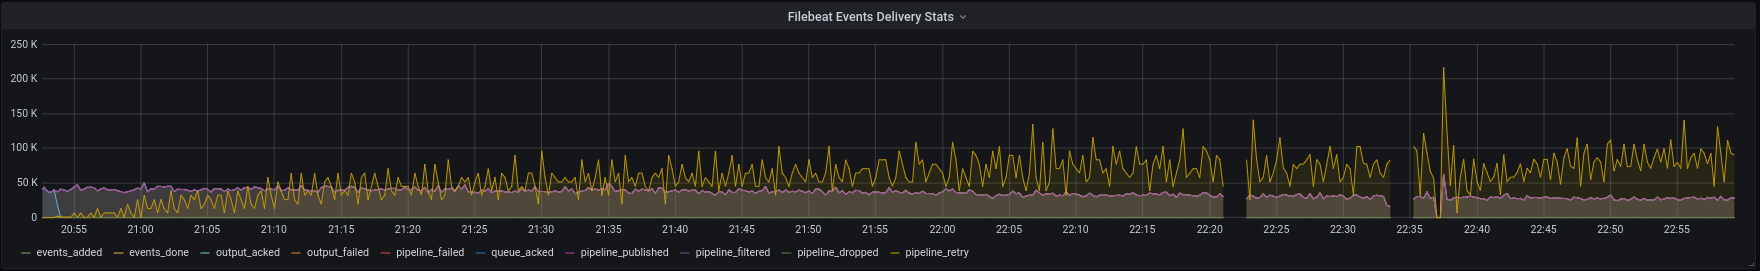 Динамика показателей доставки событий Filebeat'ом во время "отказа" Elasticsearch